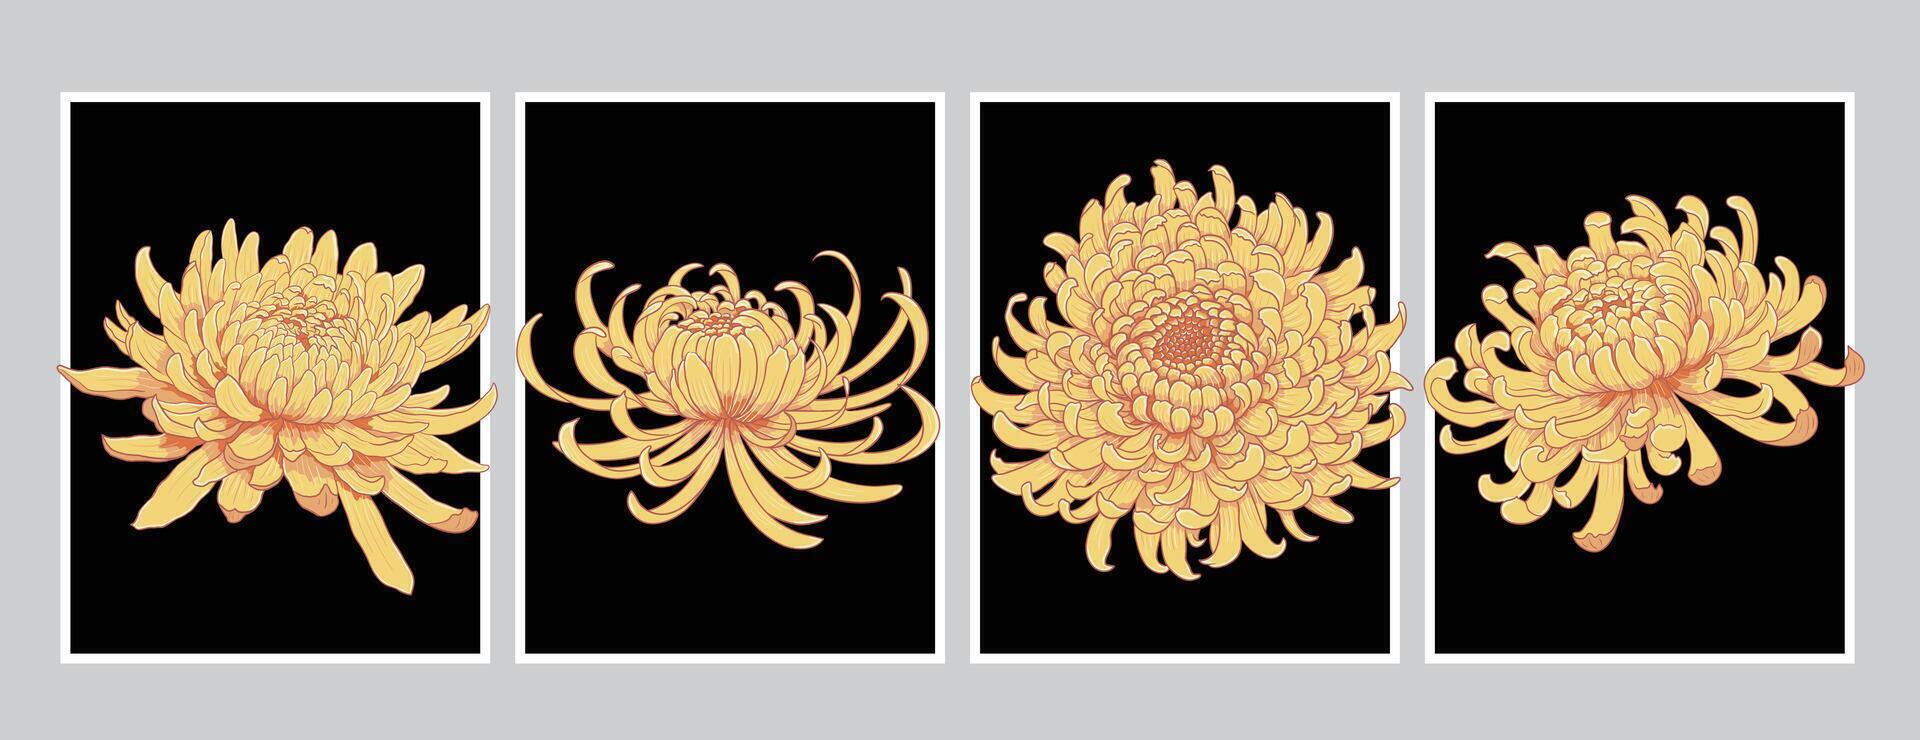 reeks van vier geel chrysant bloem bloesems geïsoleerd illustratie vector